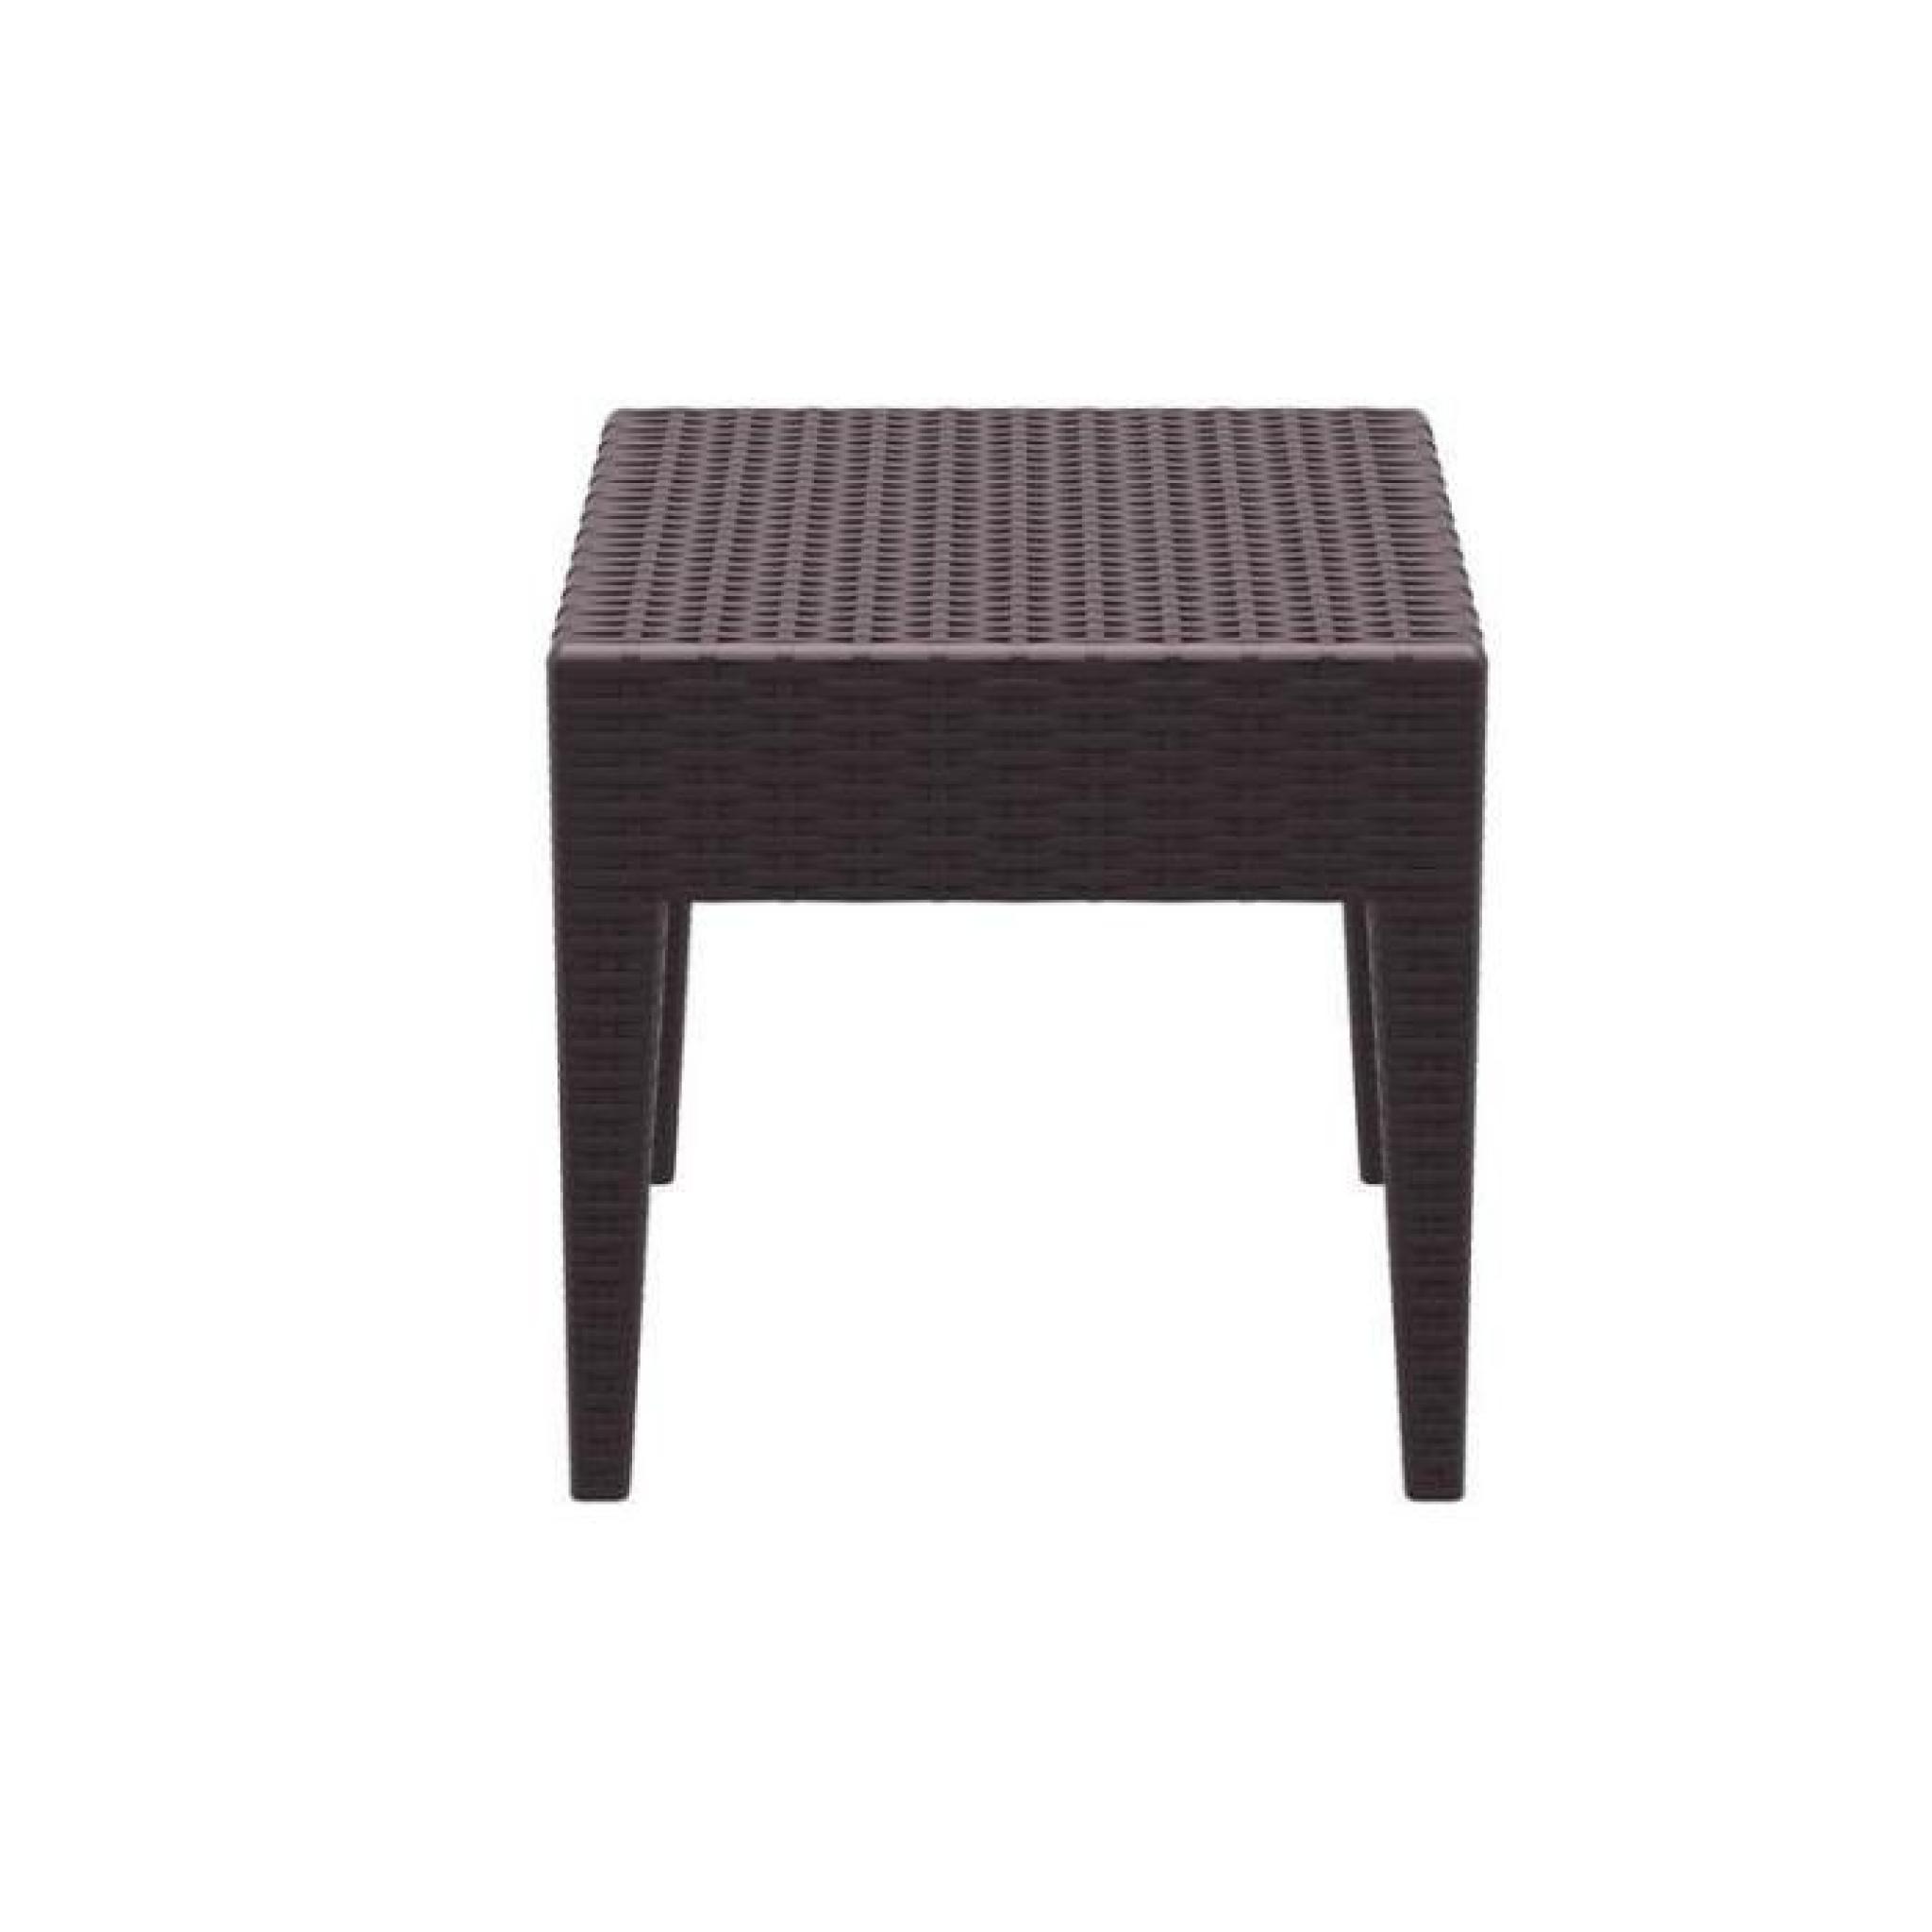 Table basse de jardin carré étanche en plastique marron 45x45x45 cm MDJ10027 pas cher